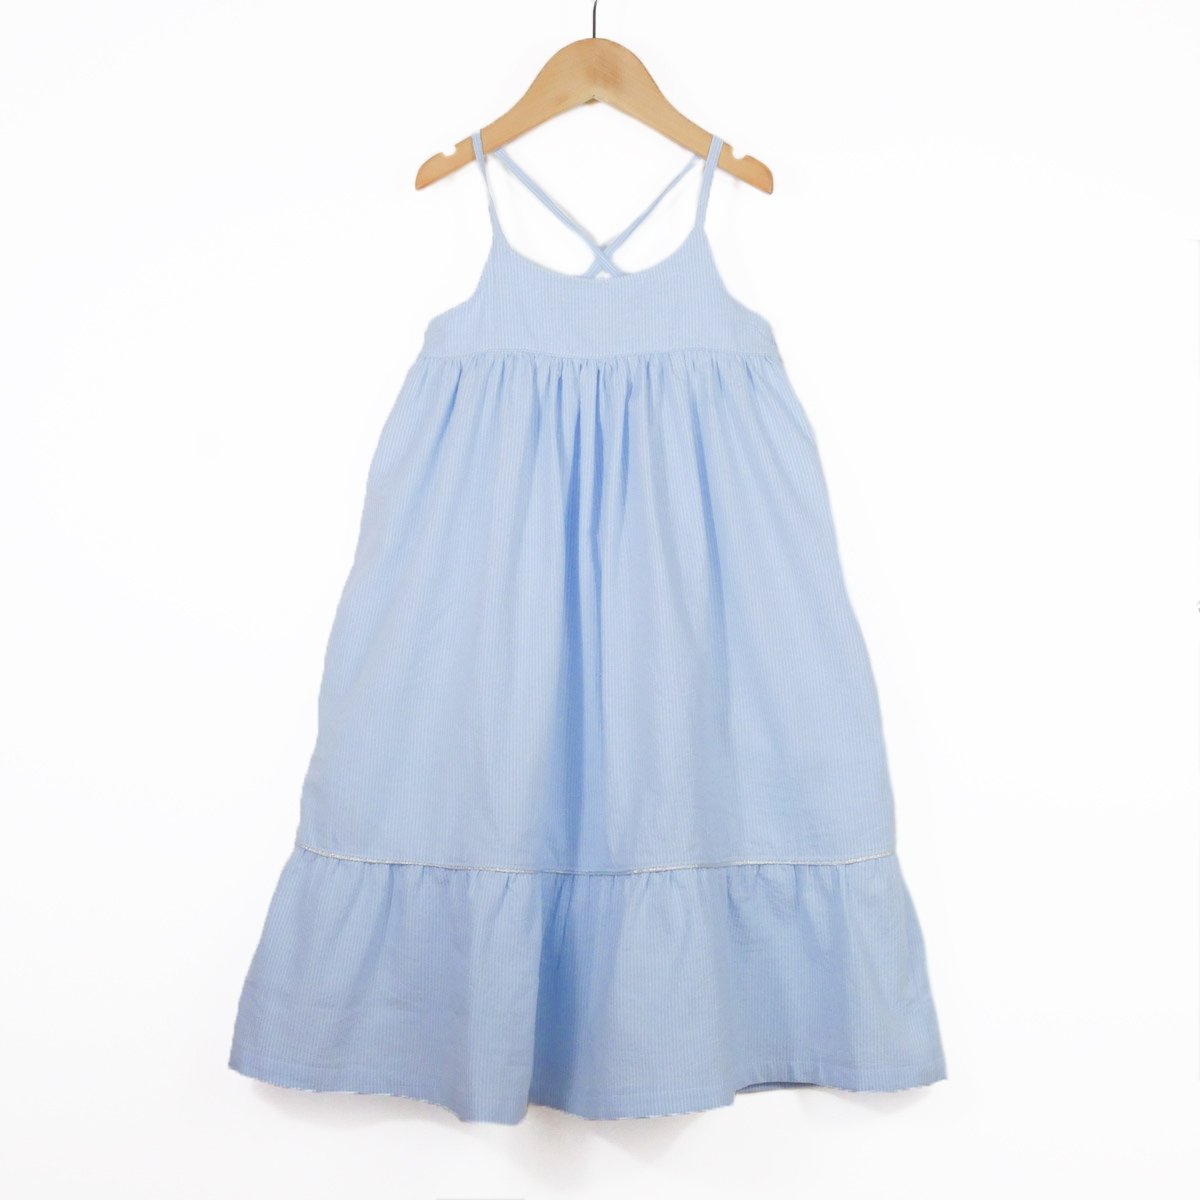 Ikatee - LENA - Shirt & dress - Kids 3/12 - Paper Sewing Pattern